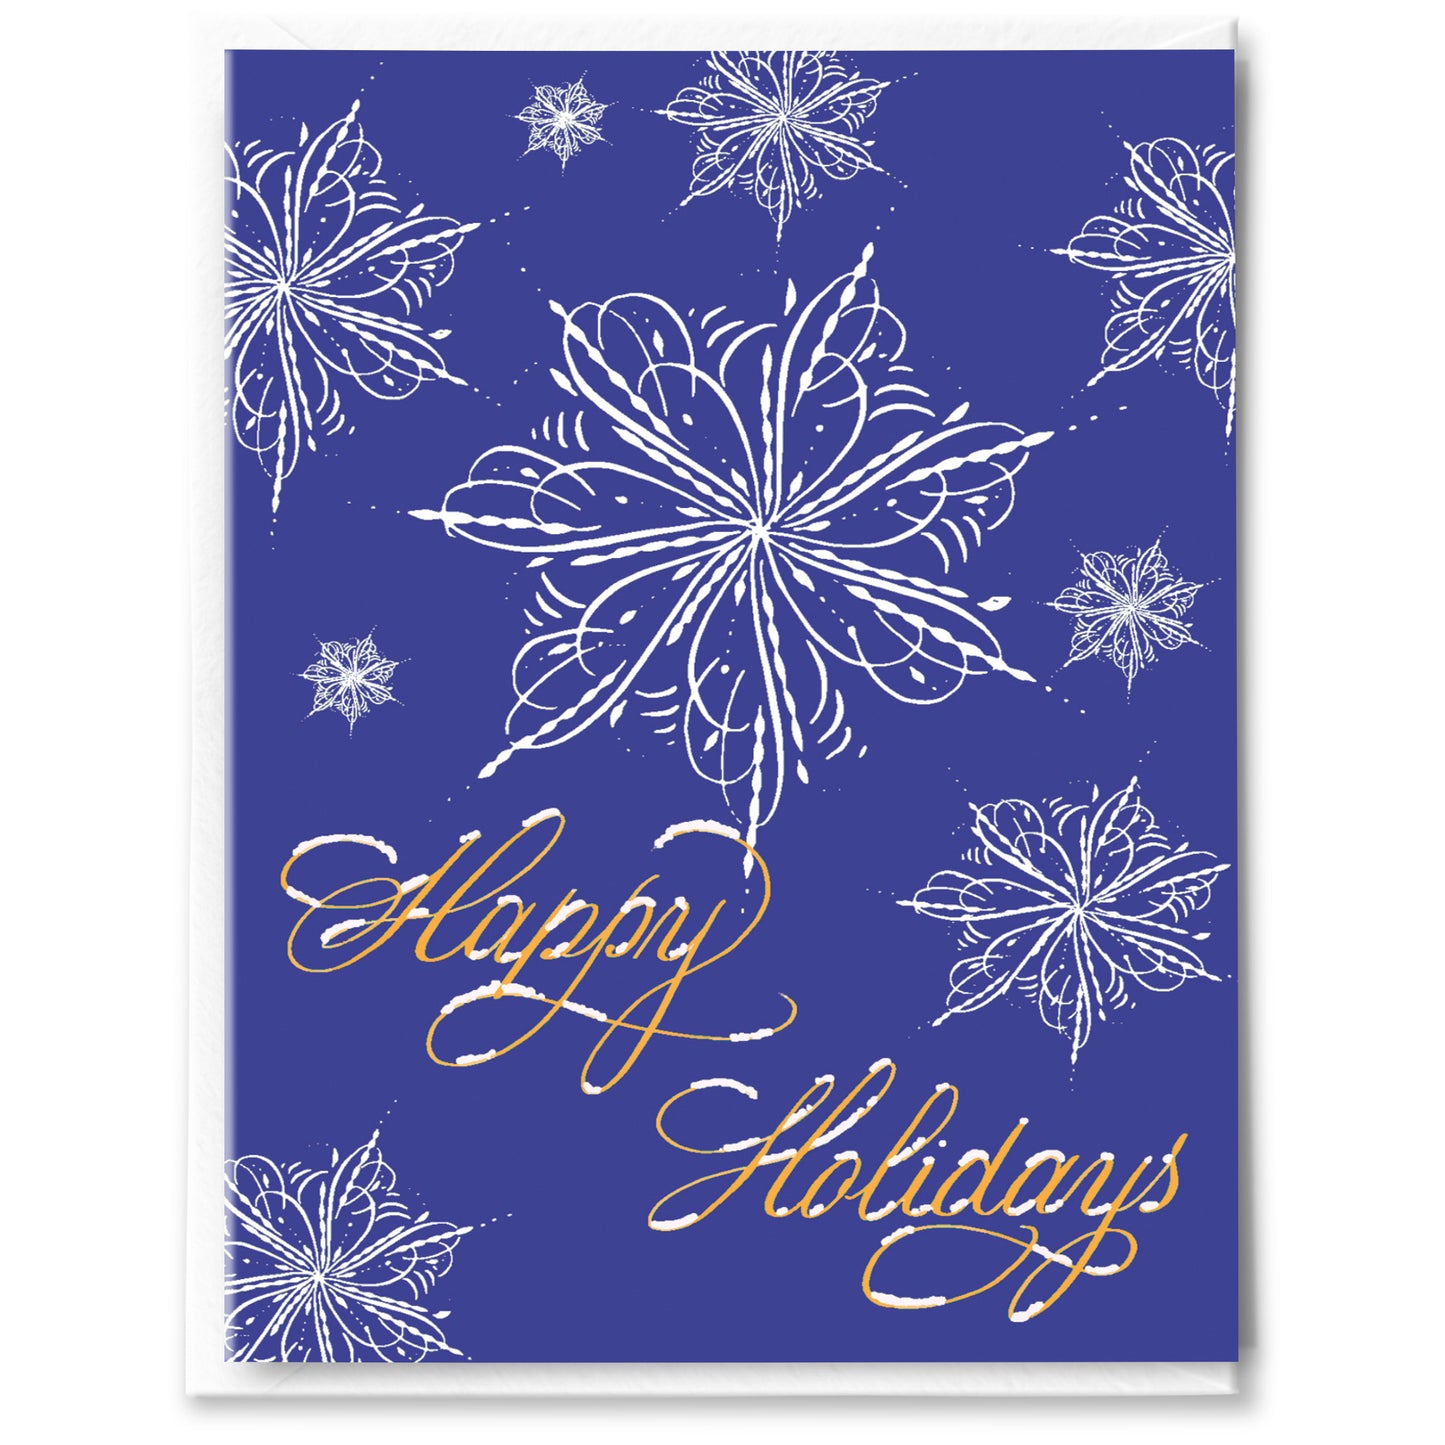 Snowy Holidays Card